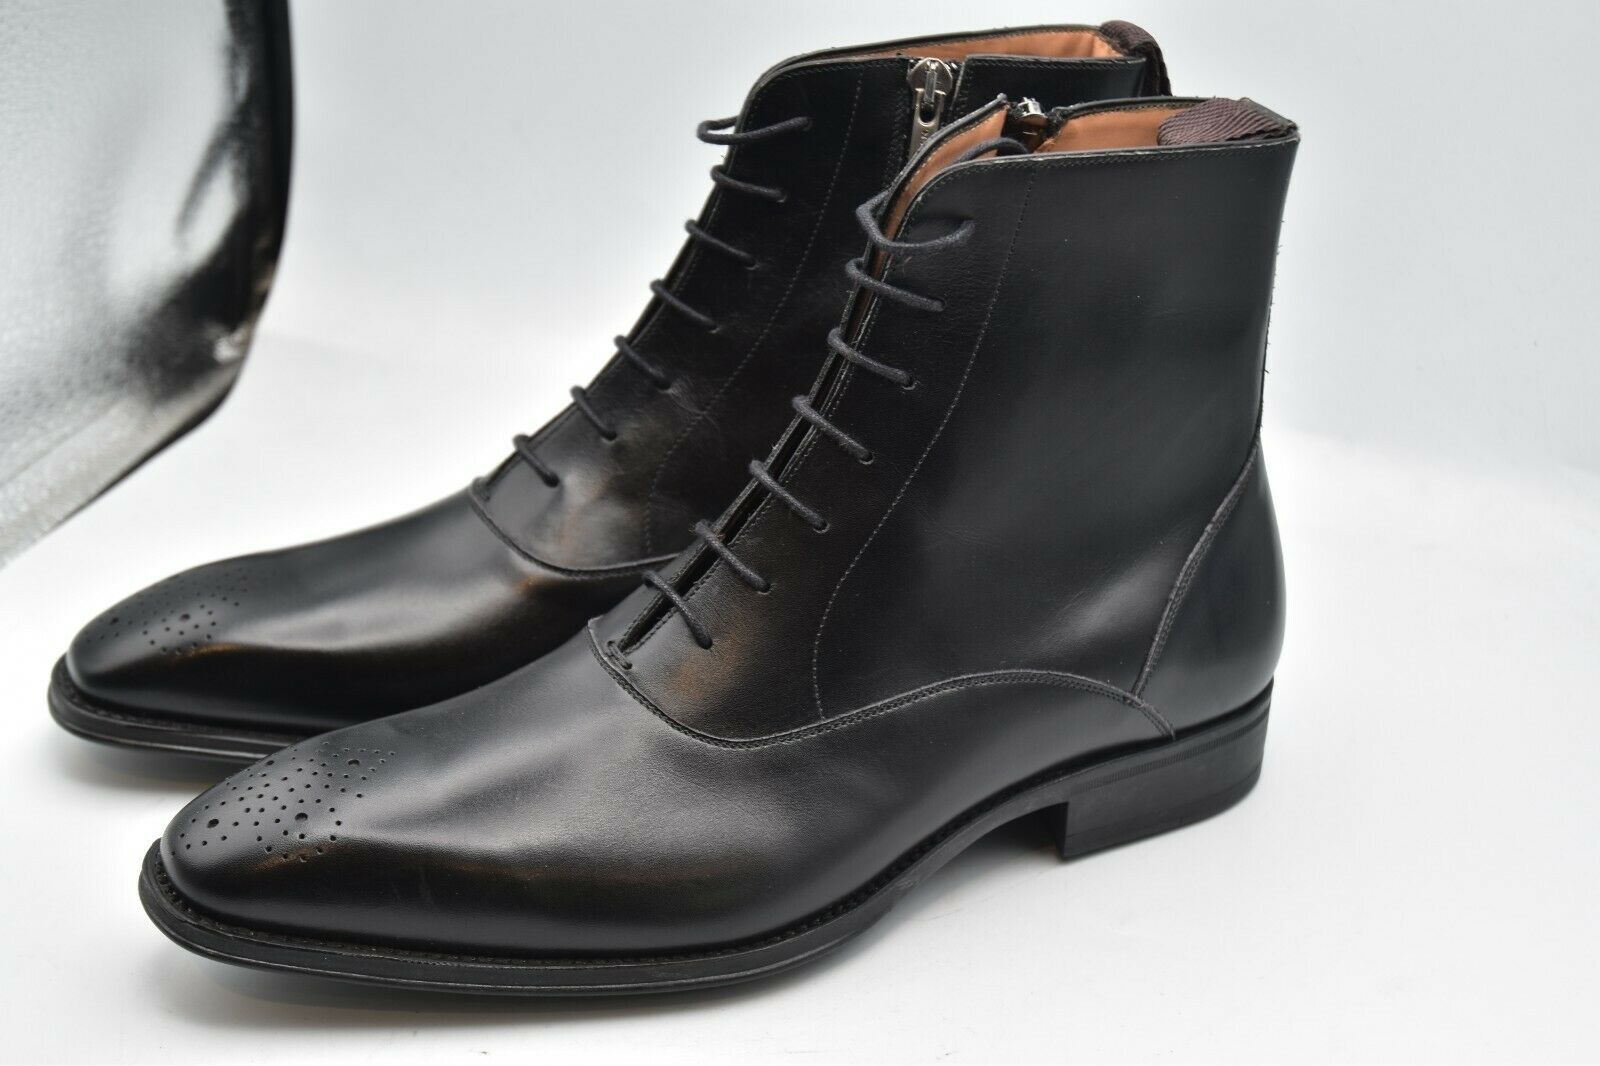 Mezlan Lace Up Zipper Boots Leather Black Shoes MEN'S SZ 9 M